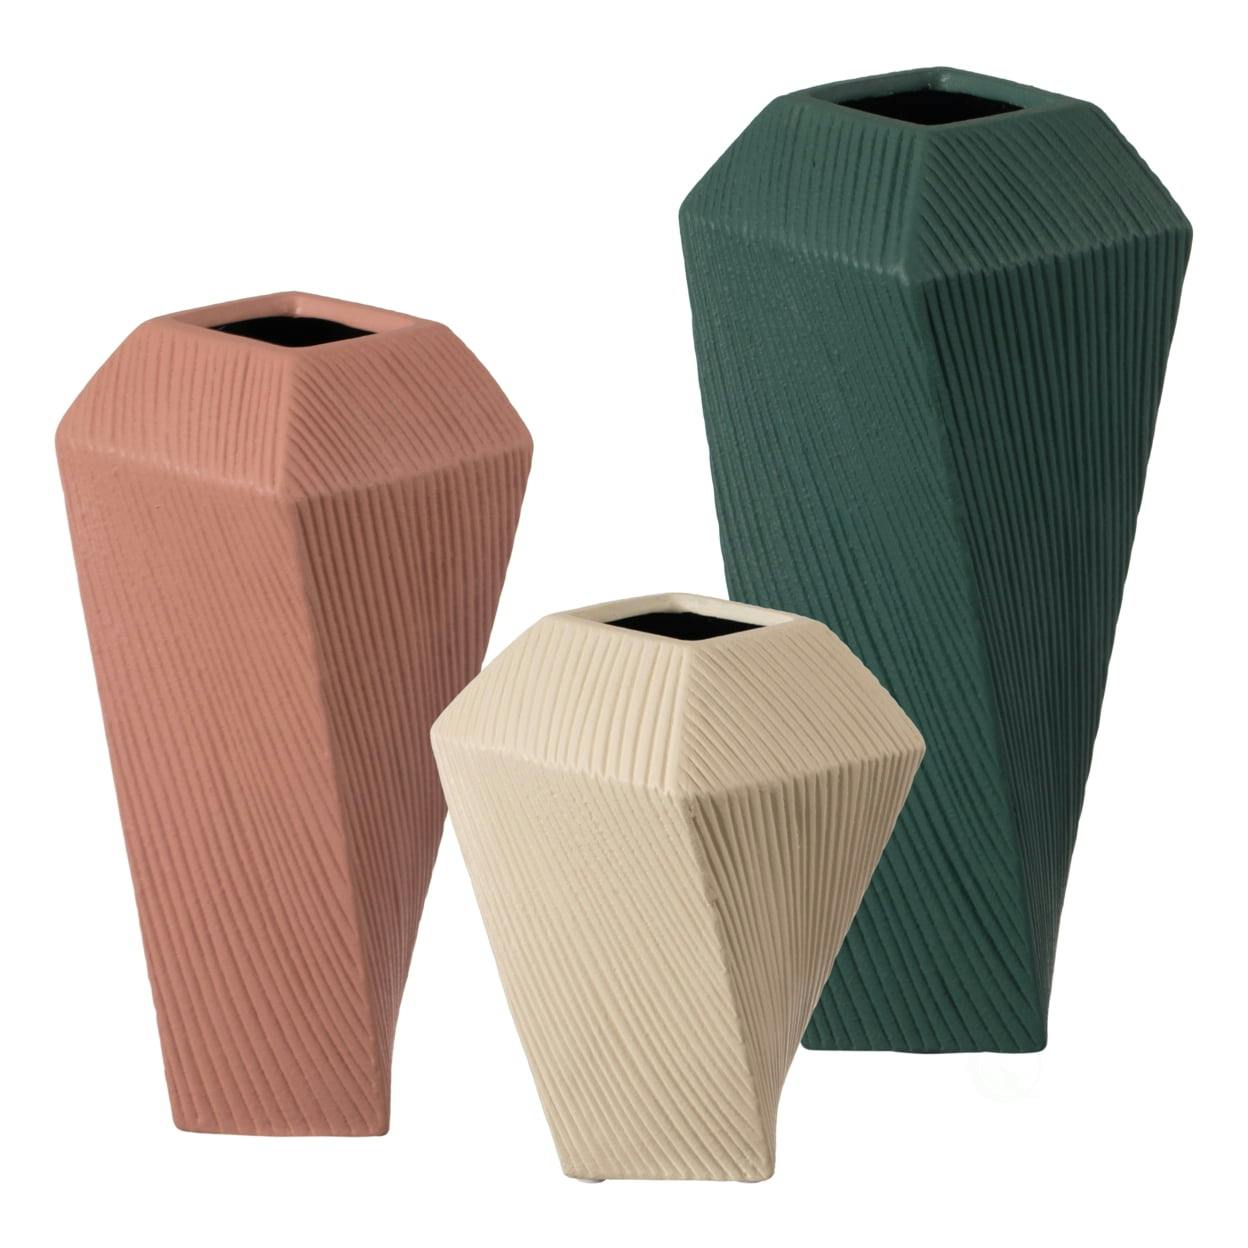 Elegant Beige Ceramic Square Twisted 10" Table Vase